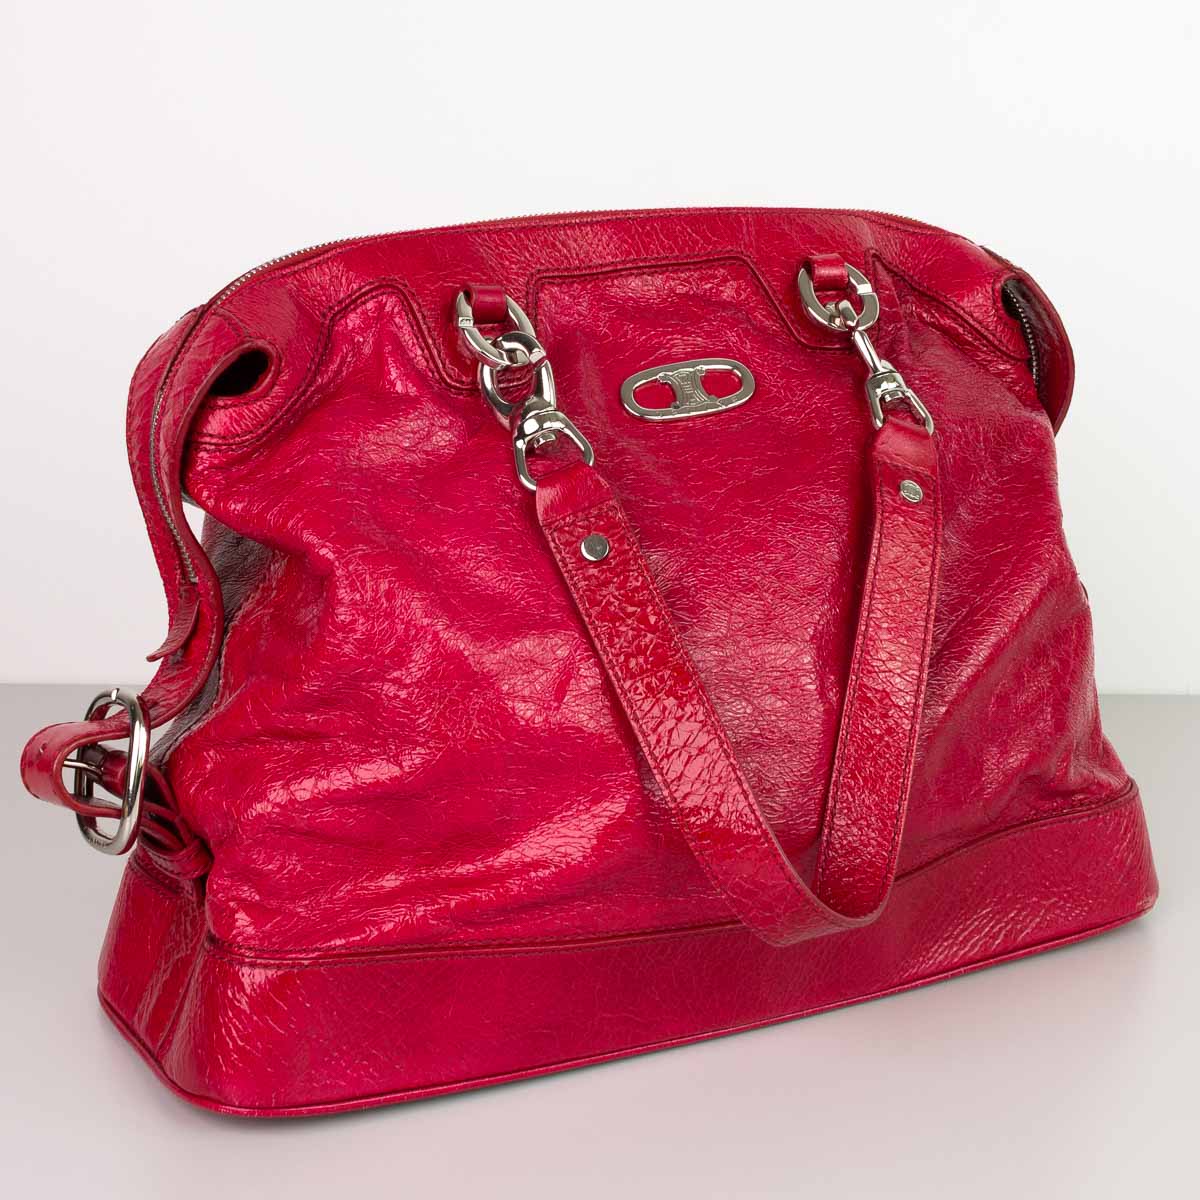 1 Handtasche CELINE, rot, silberfarbige Beschläge, Höhe ca. 25cm